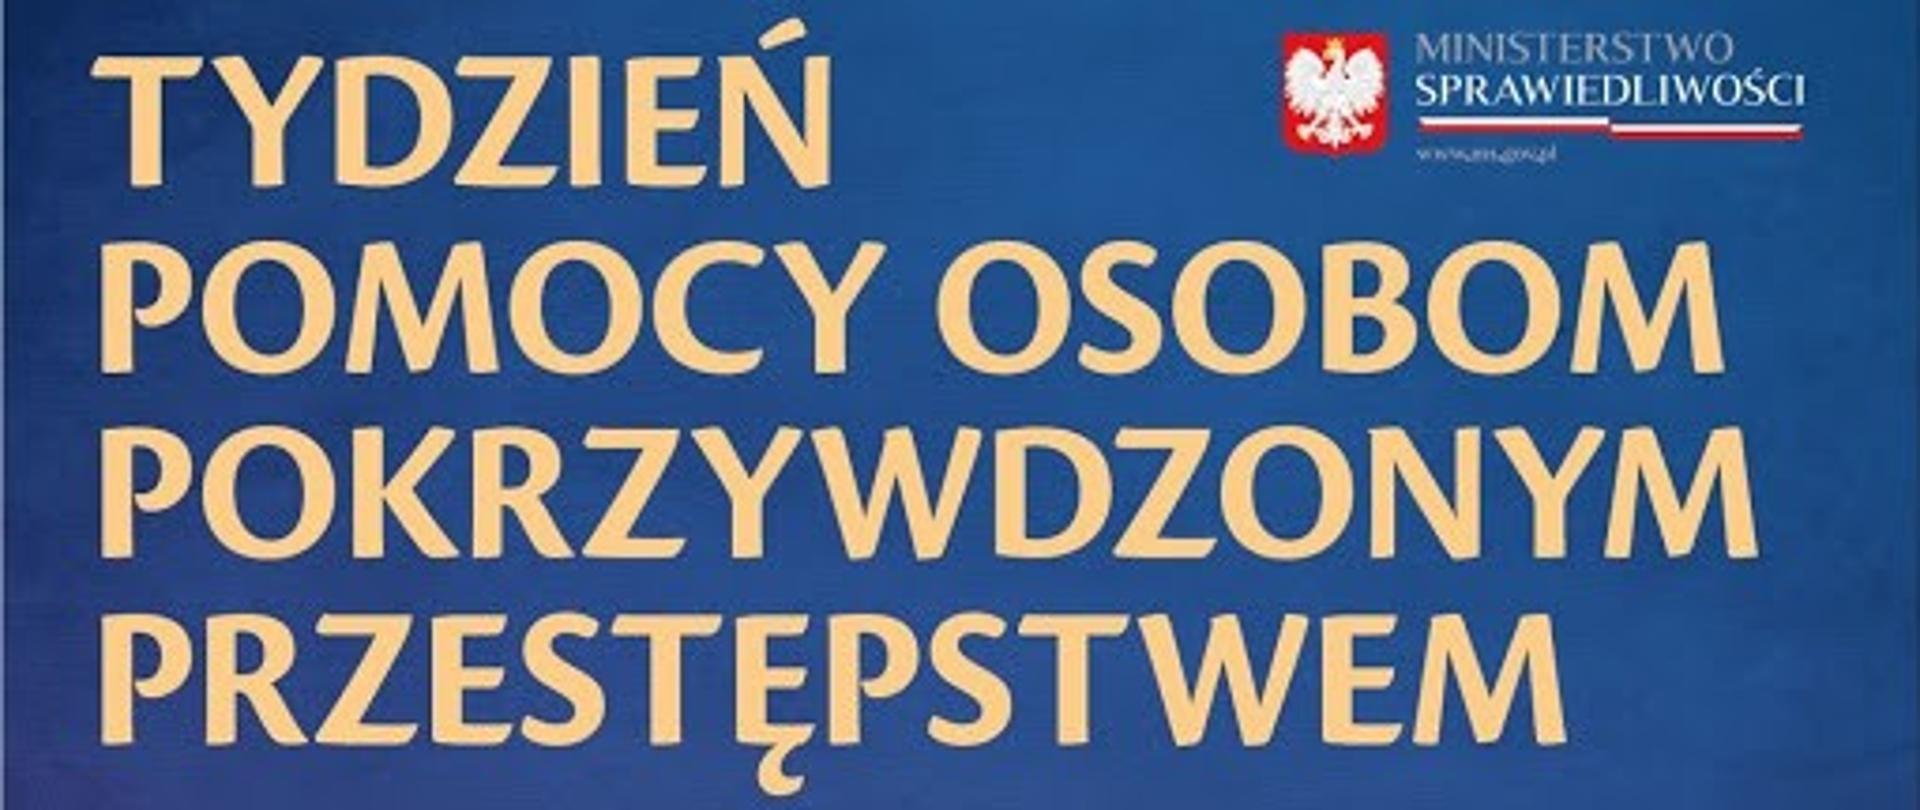 Napis w kolorze żółtym na niebieskim tle "tydzień pomocy osobom pokrzywdzonym przestępstwem" w prawym górnym rogu godło polski oraz napis "Ministerstwo Sprawiedliwości"